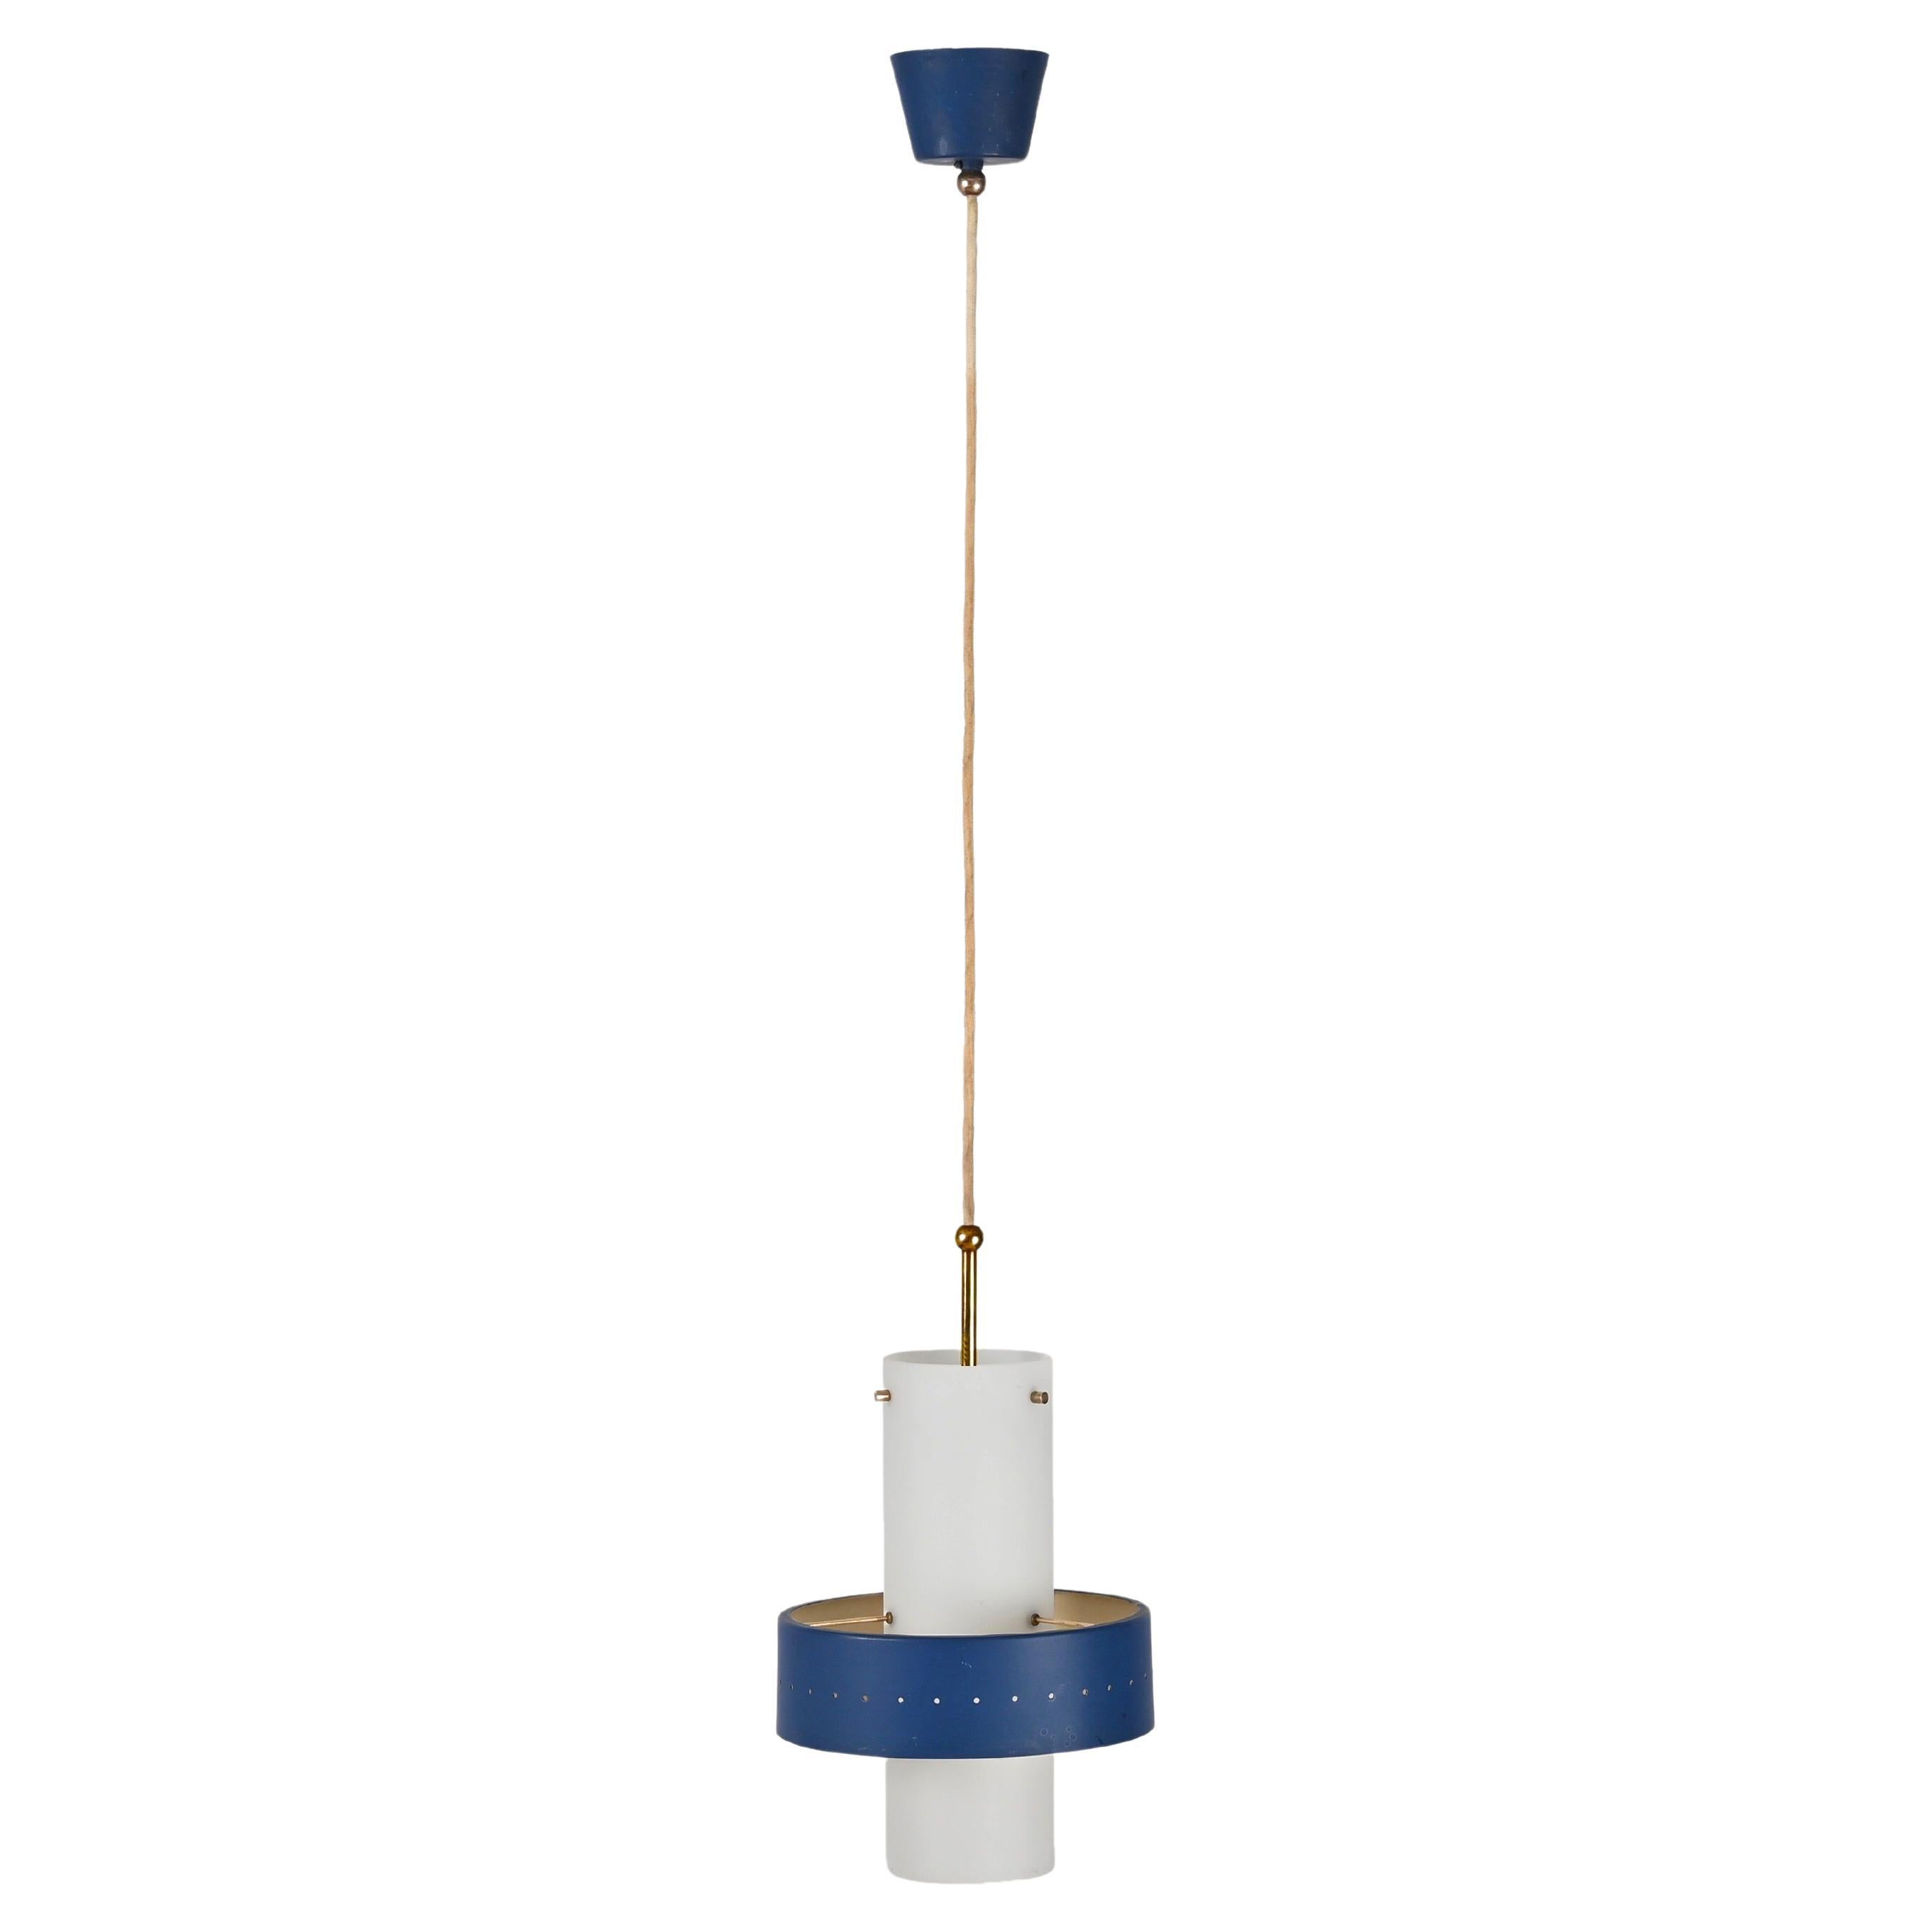 Stilnovo Lampe suspendue en verre opale, laiton et métal bleu, Lights italien années 1950